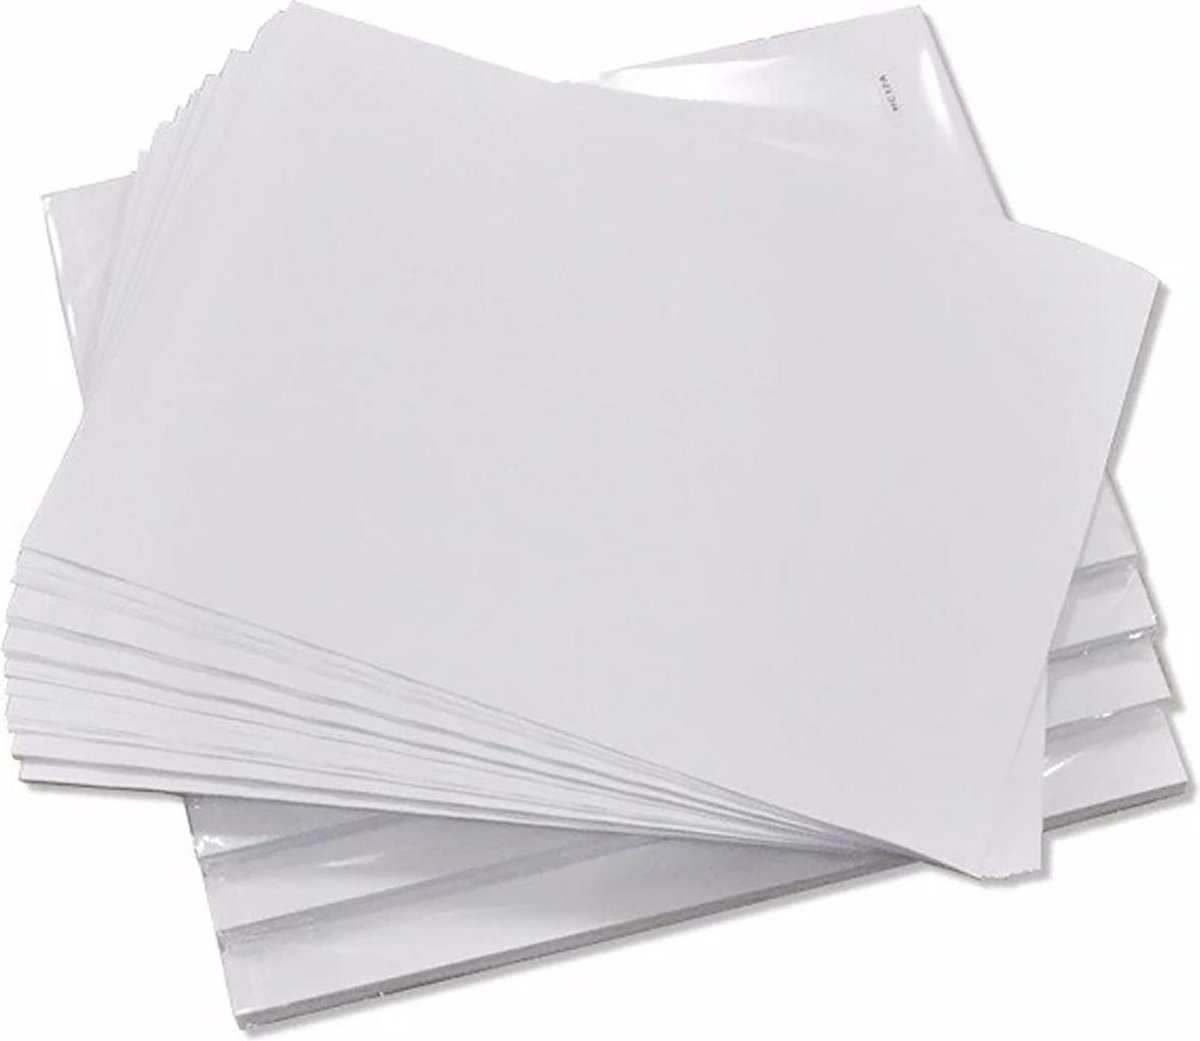 100 feuilles A4 de papier sublimation Premium, Printer par sublimation